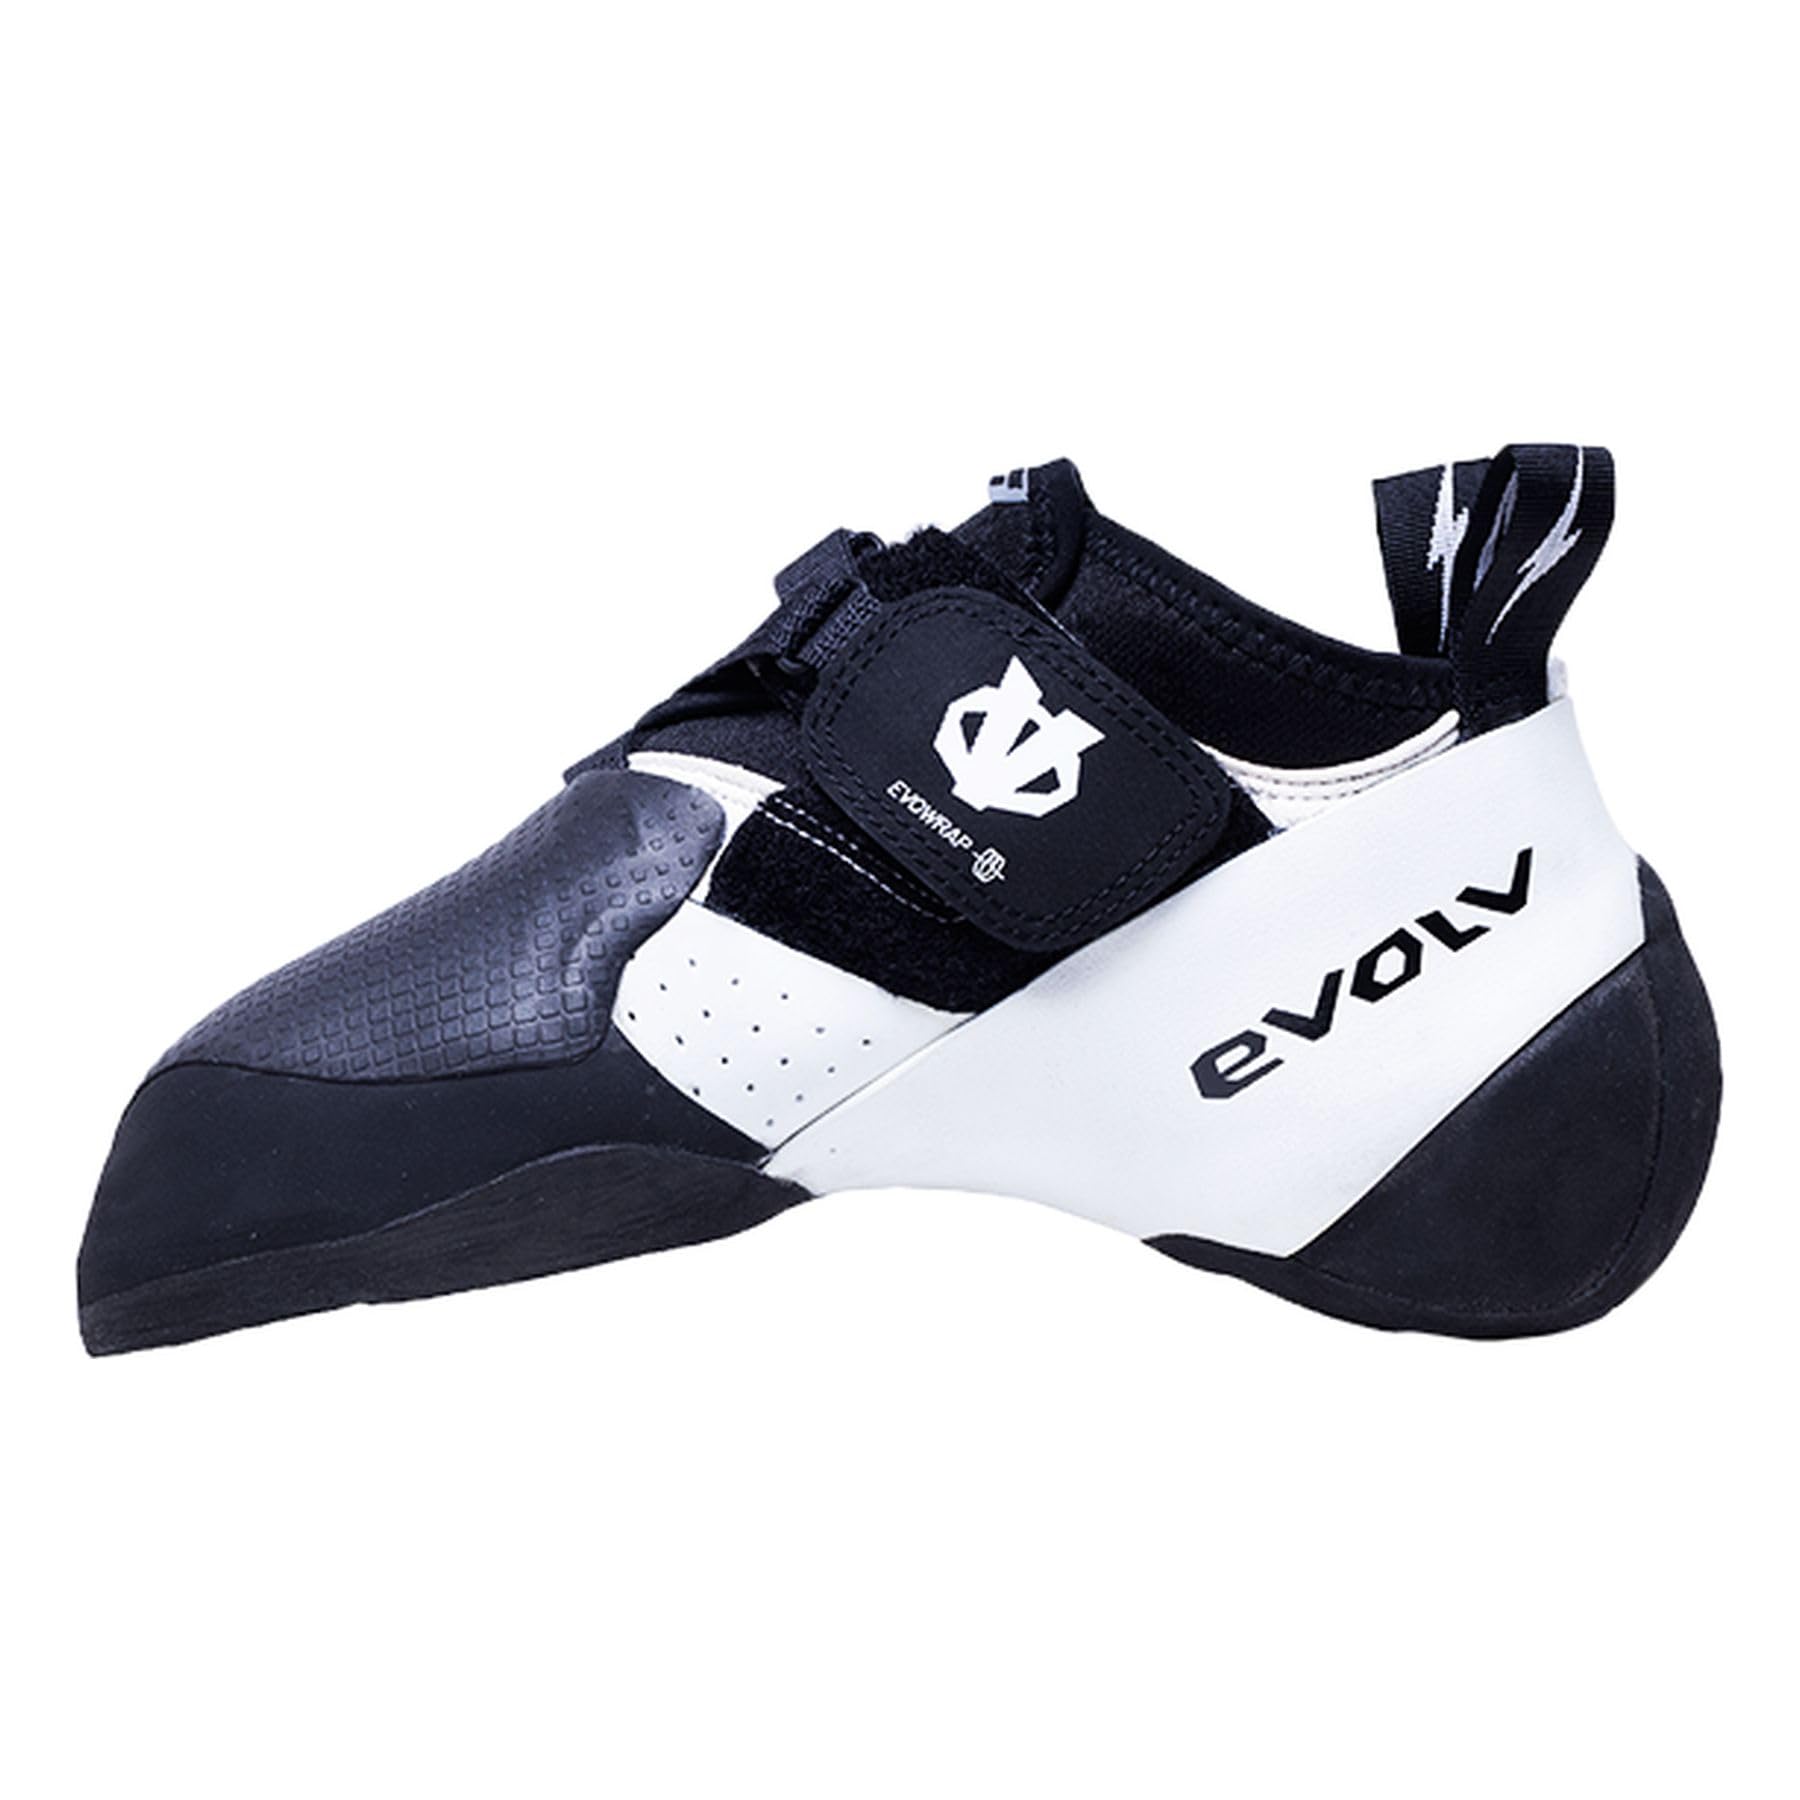 EVOLV Zenist Pro Climbing Shoes - Men's